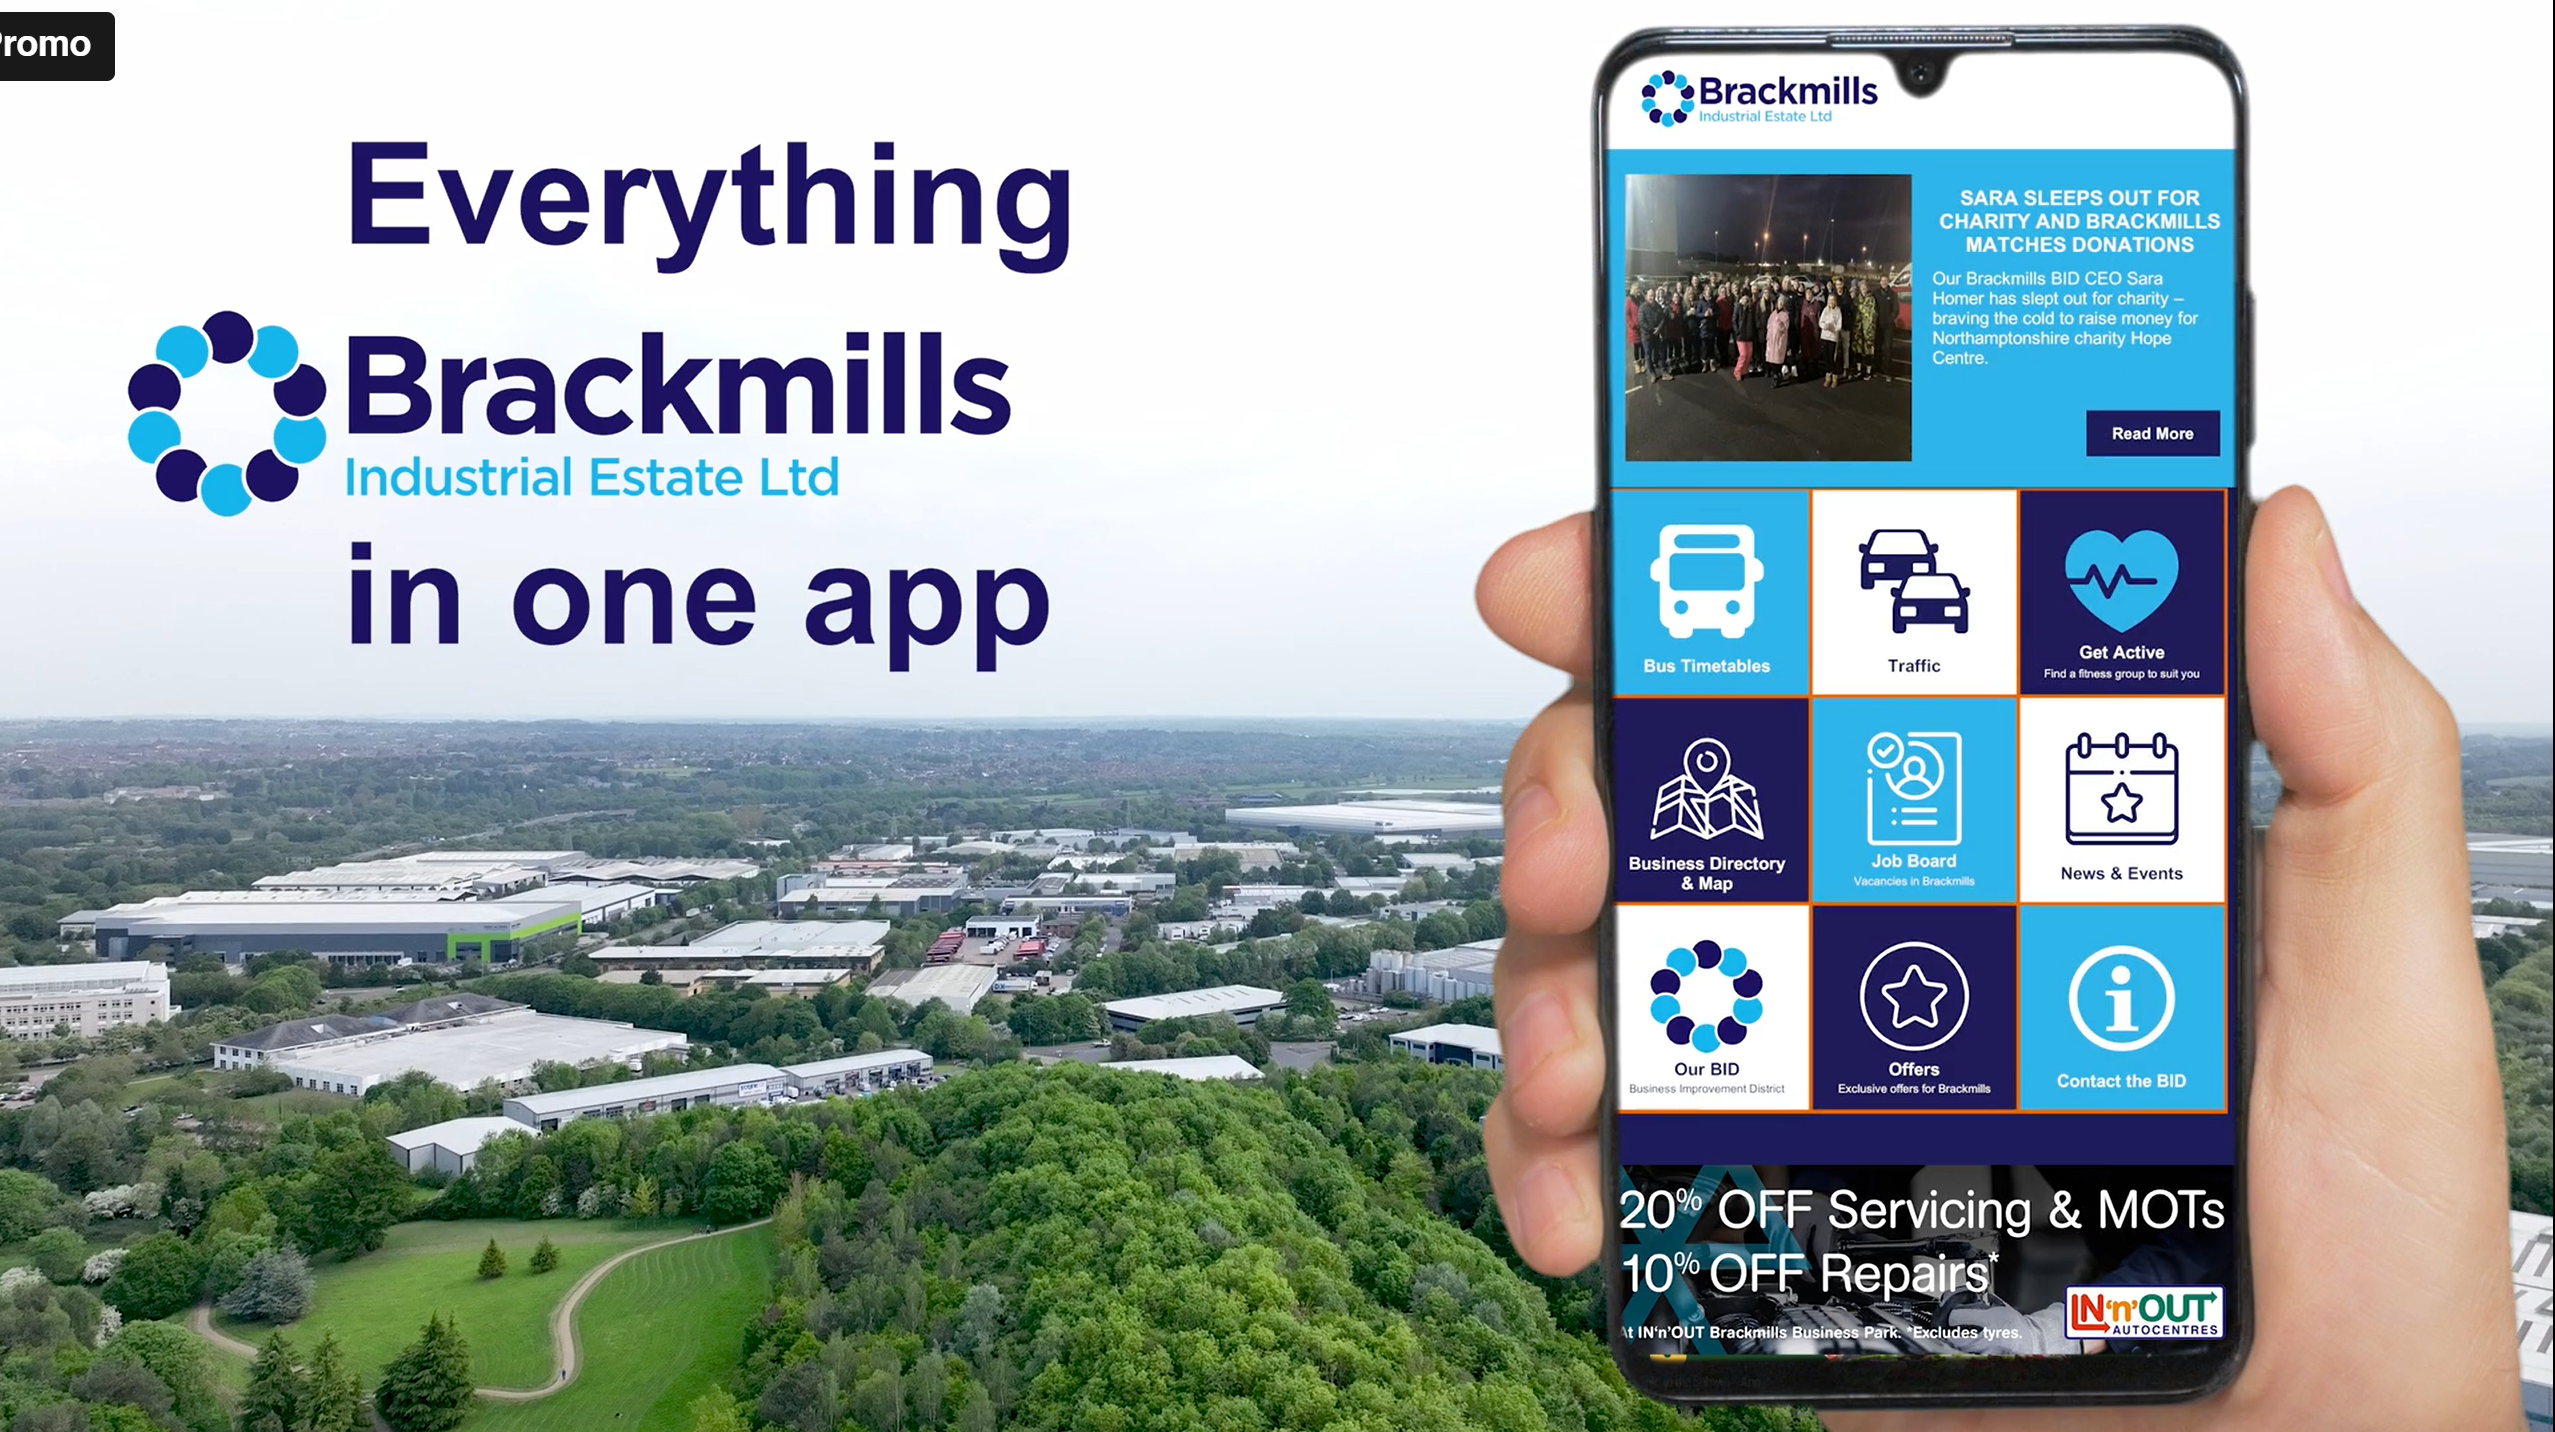 Download the Brackmills App